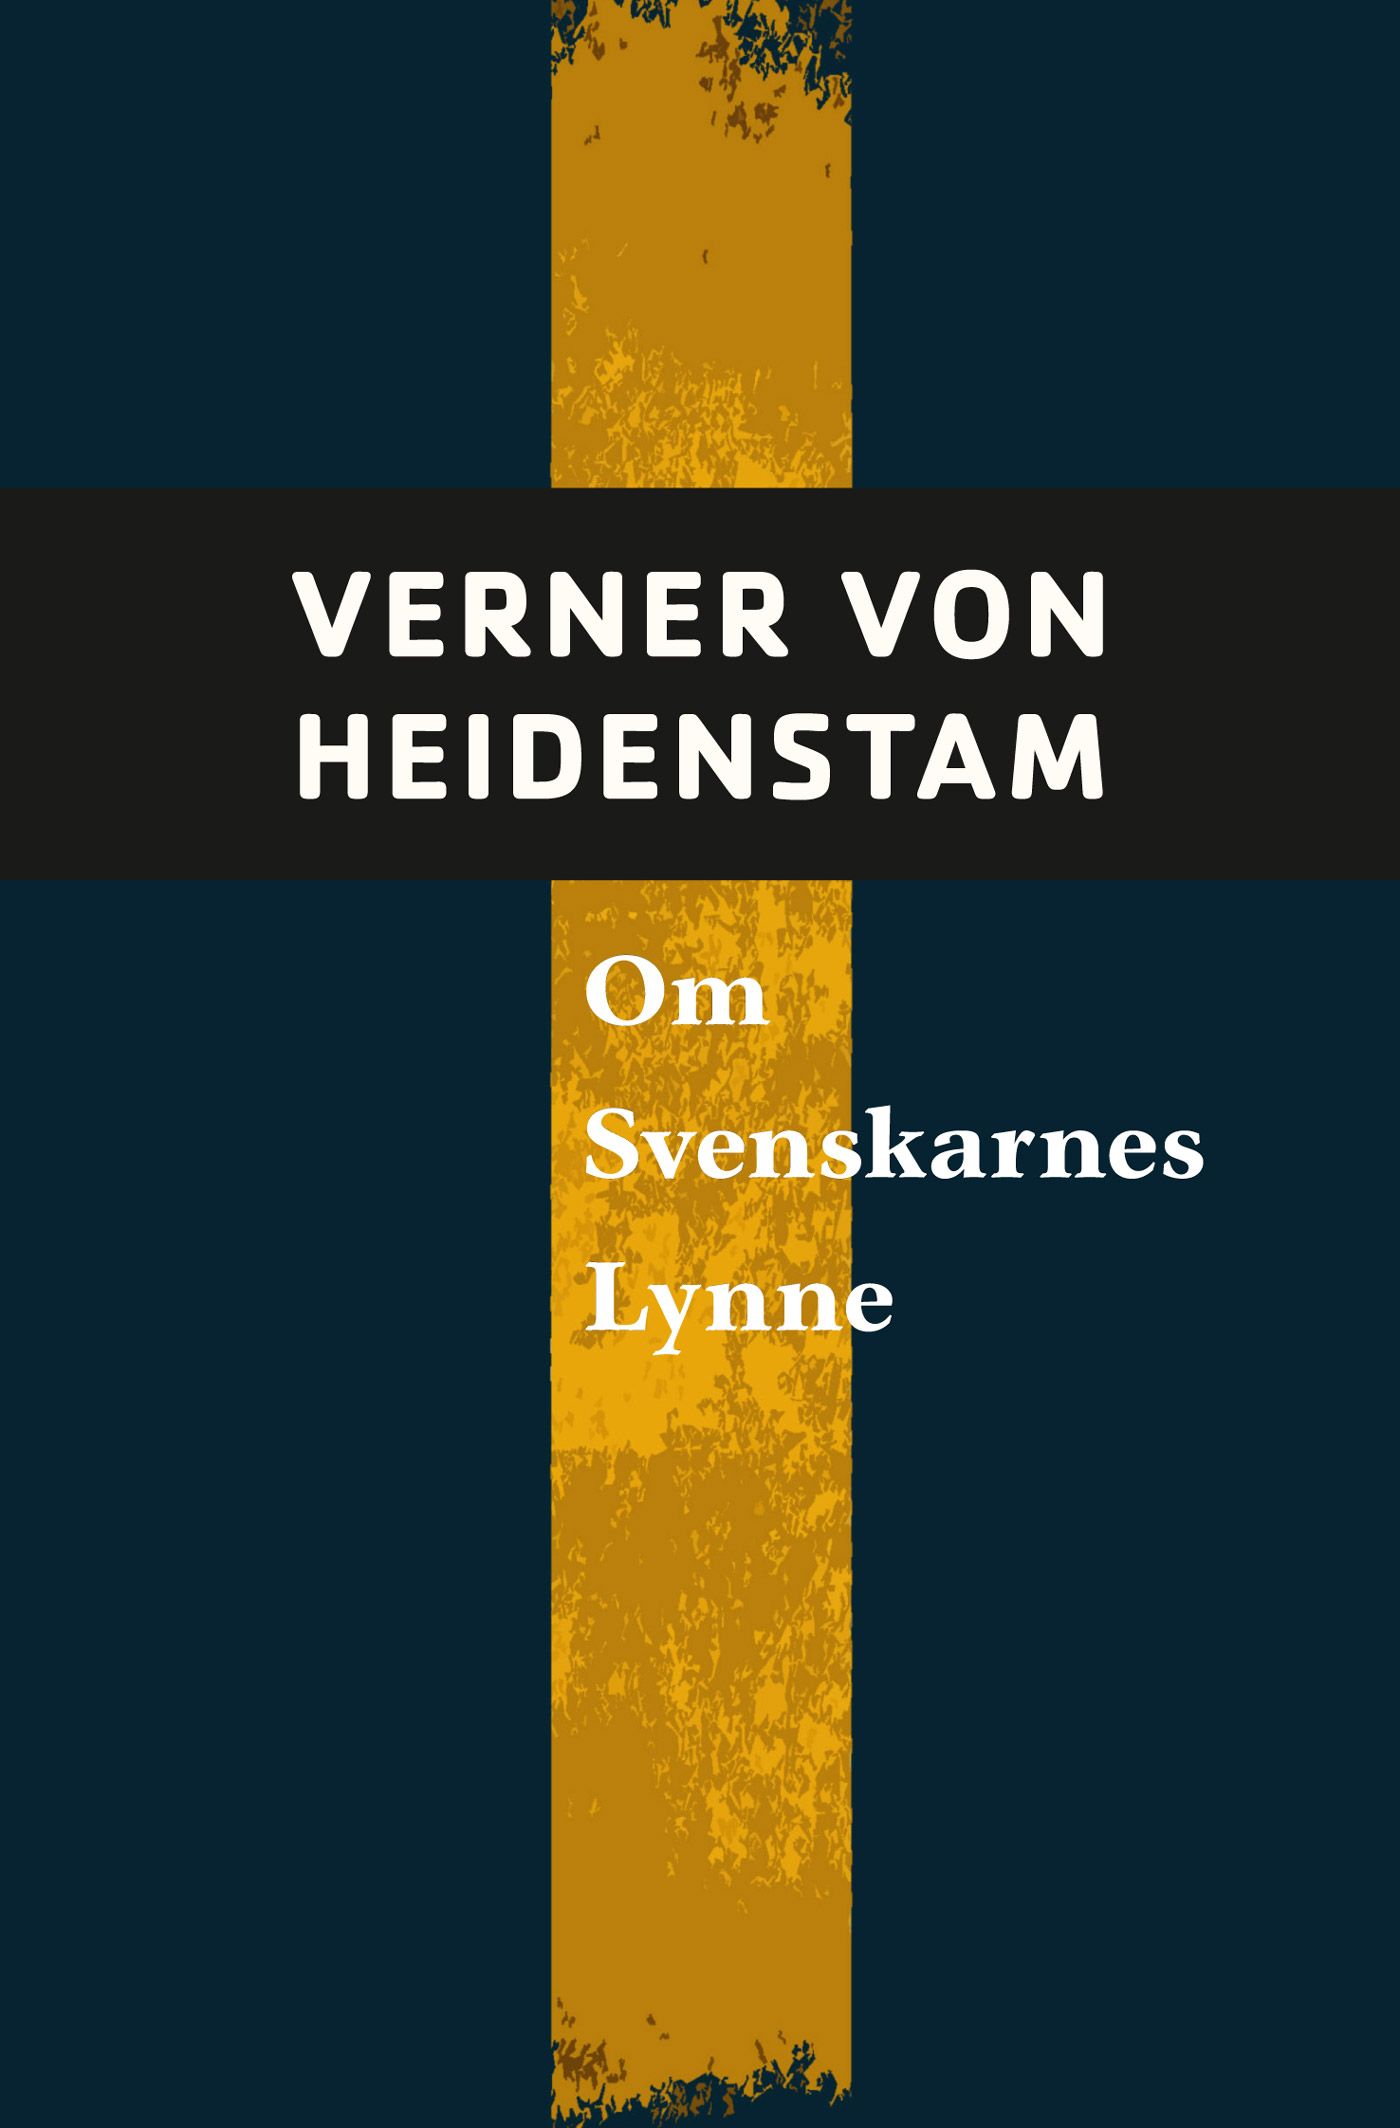 Om svenskarnas lynne, e-bok av Verner von Heidenstam